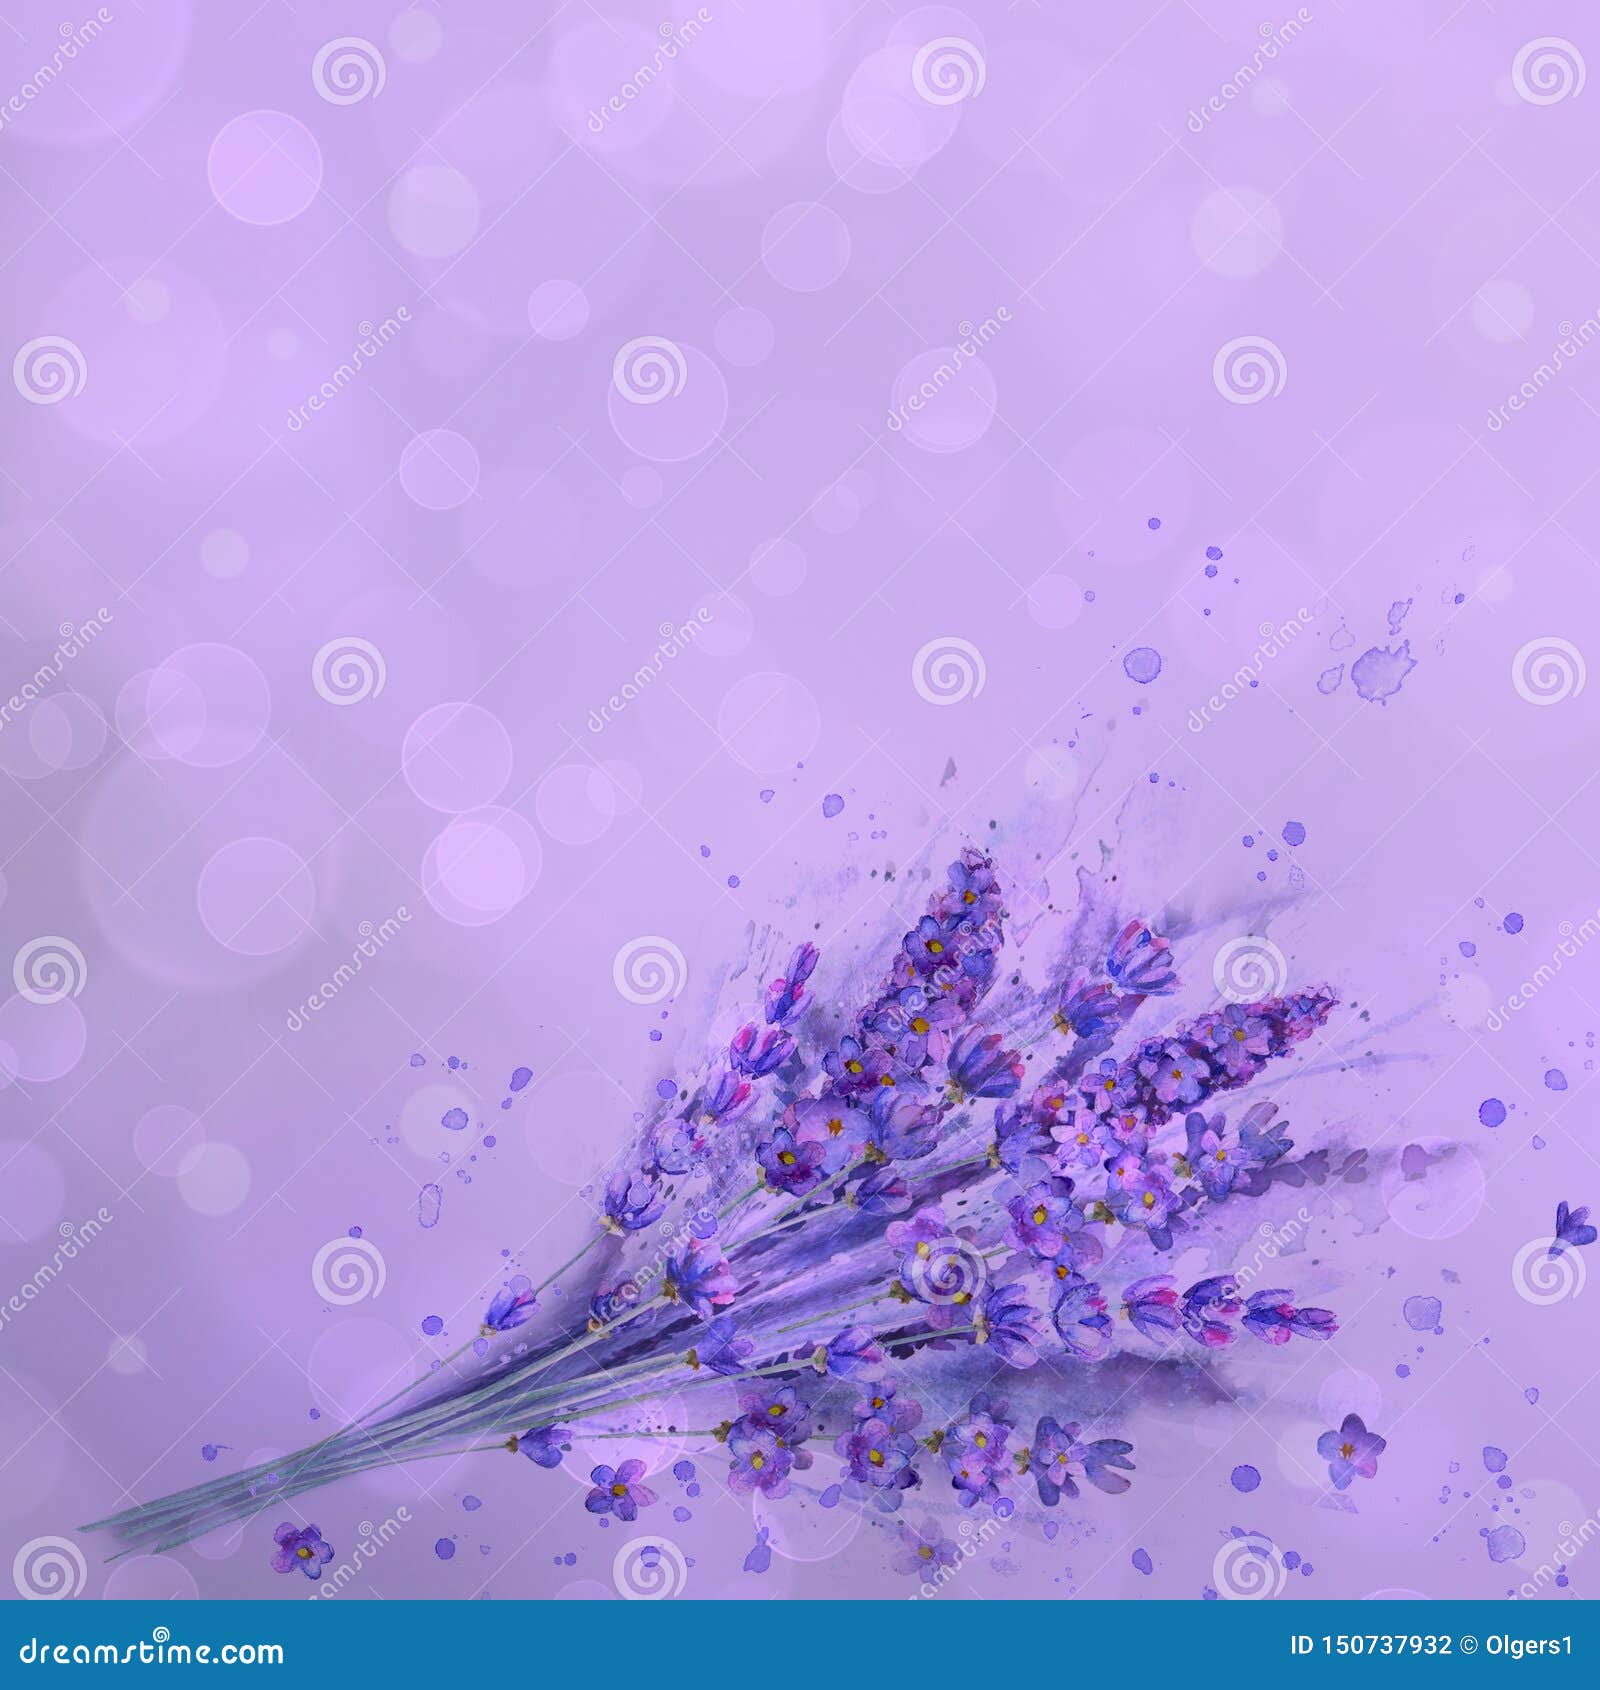 Watercolor Lavender Bouquet. Lavender Flowers, Watercolour Splashes On